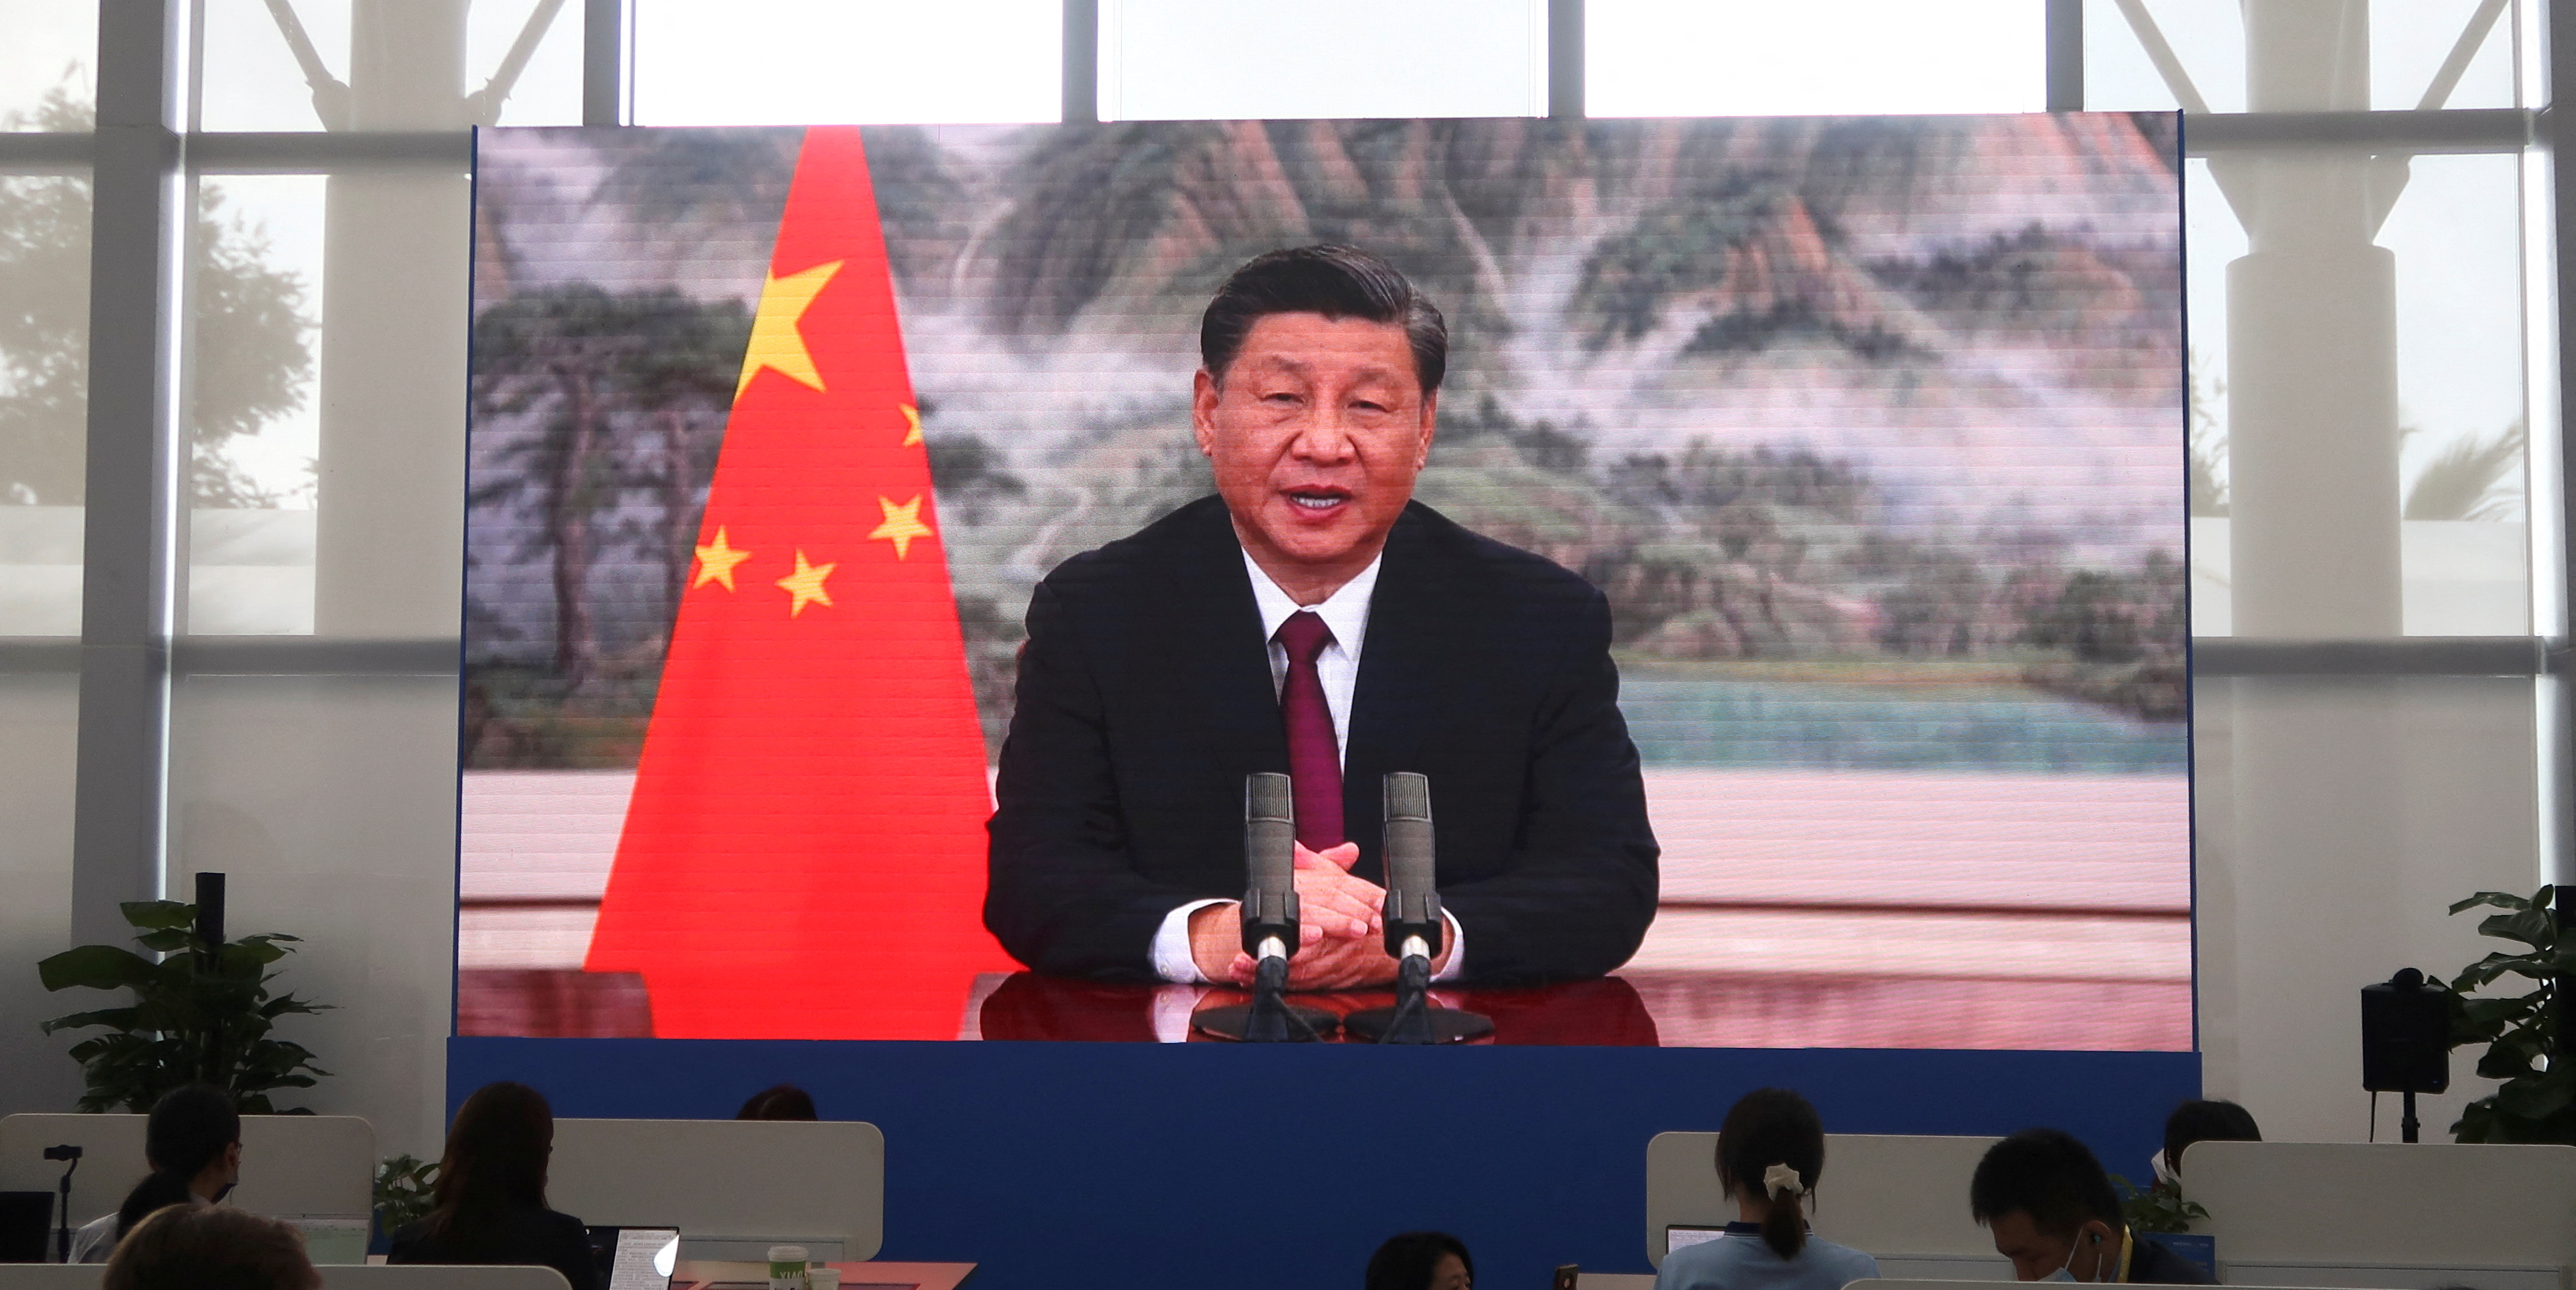 Xi Jinping critique les sanctions des Occidentaux face à la Russie, sans les nommer